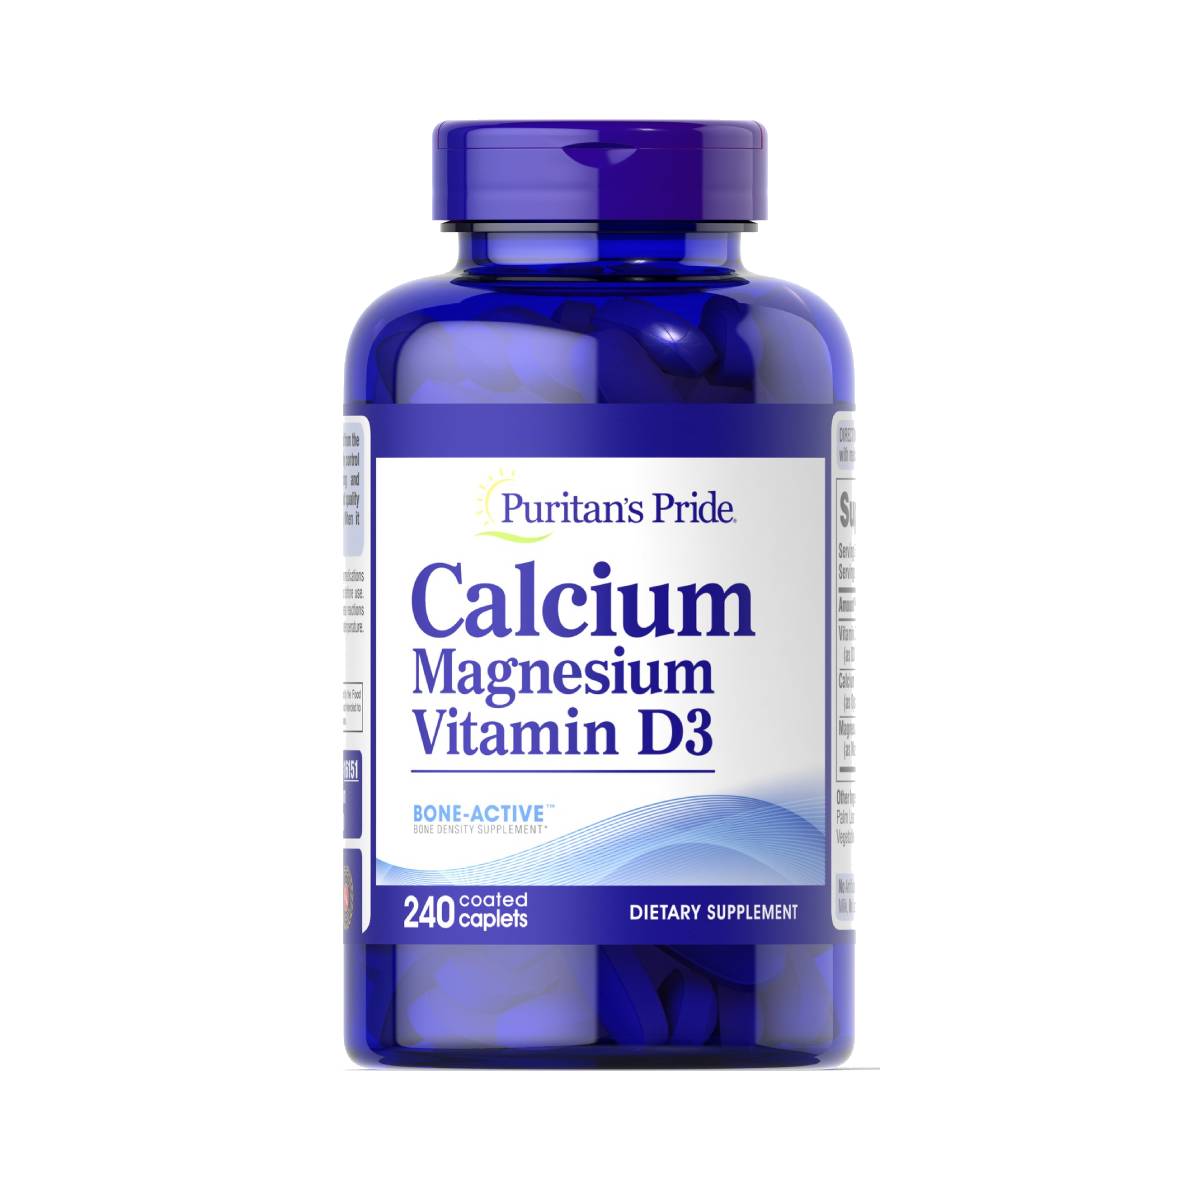 Puritan's Pride, Calcium Magnesium with Vitamin D